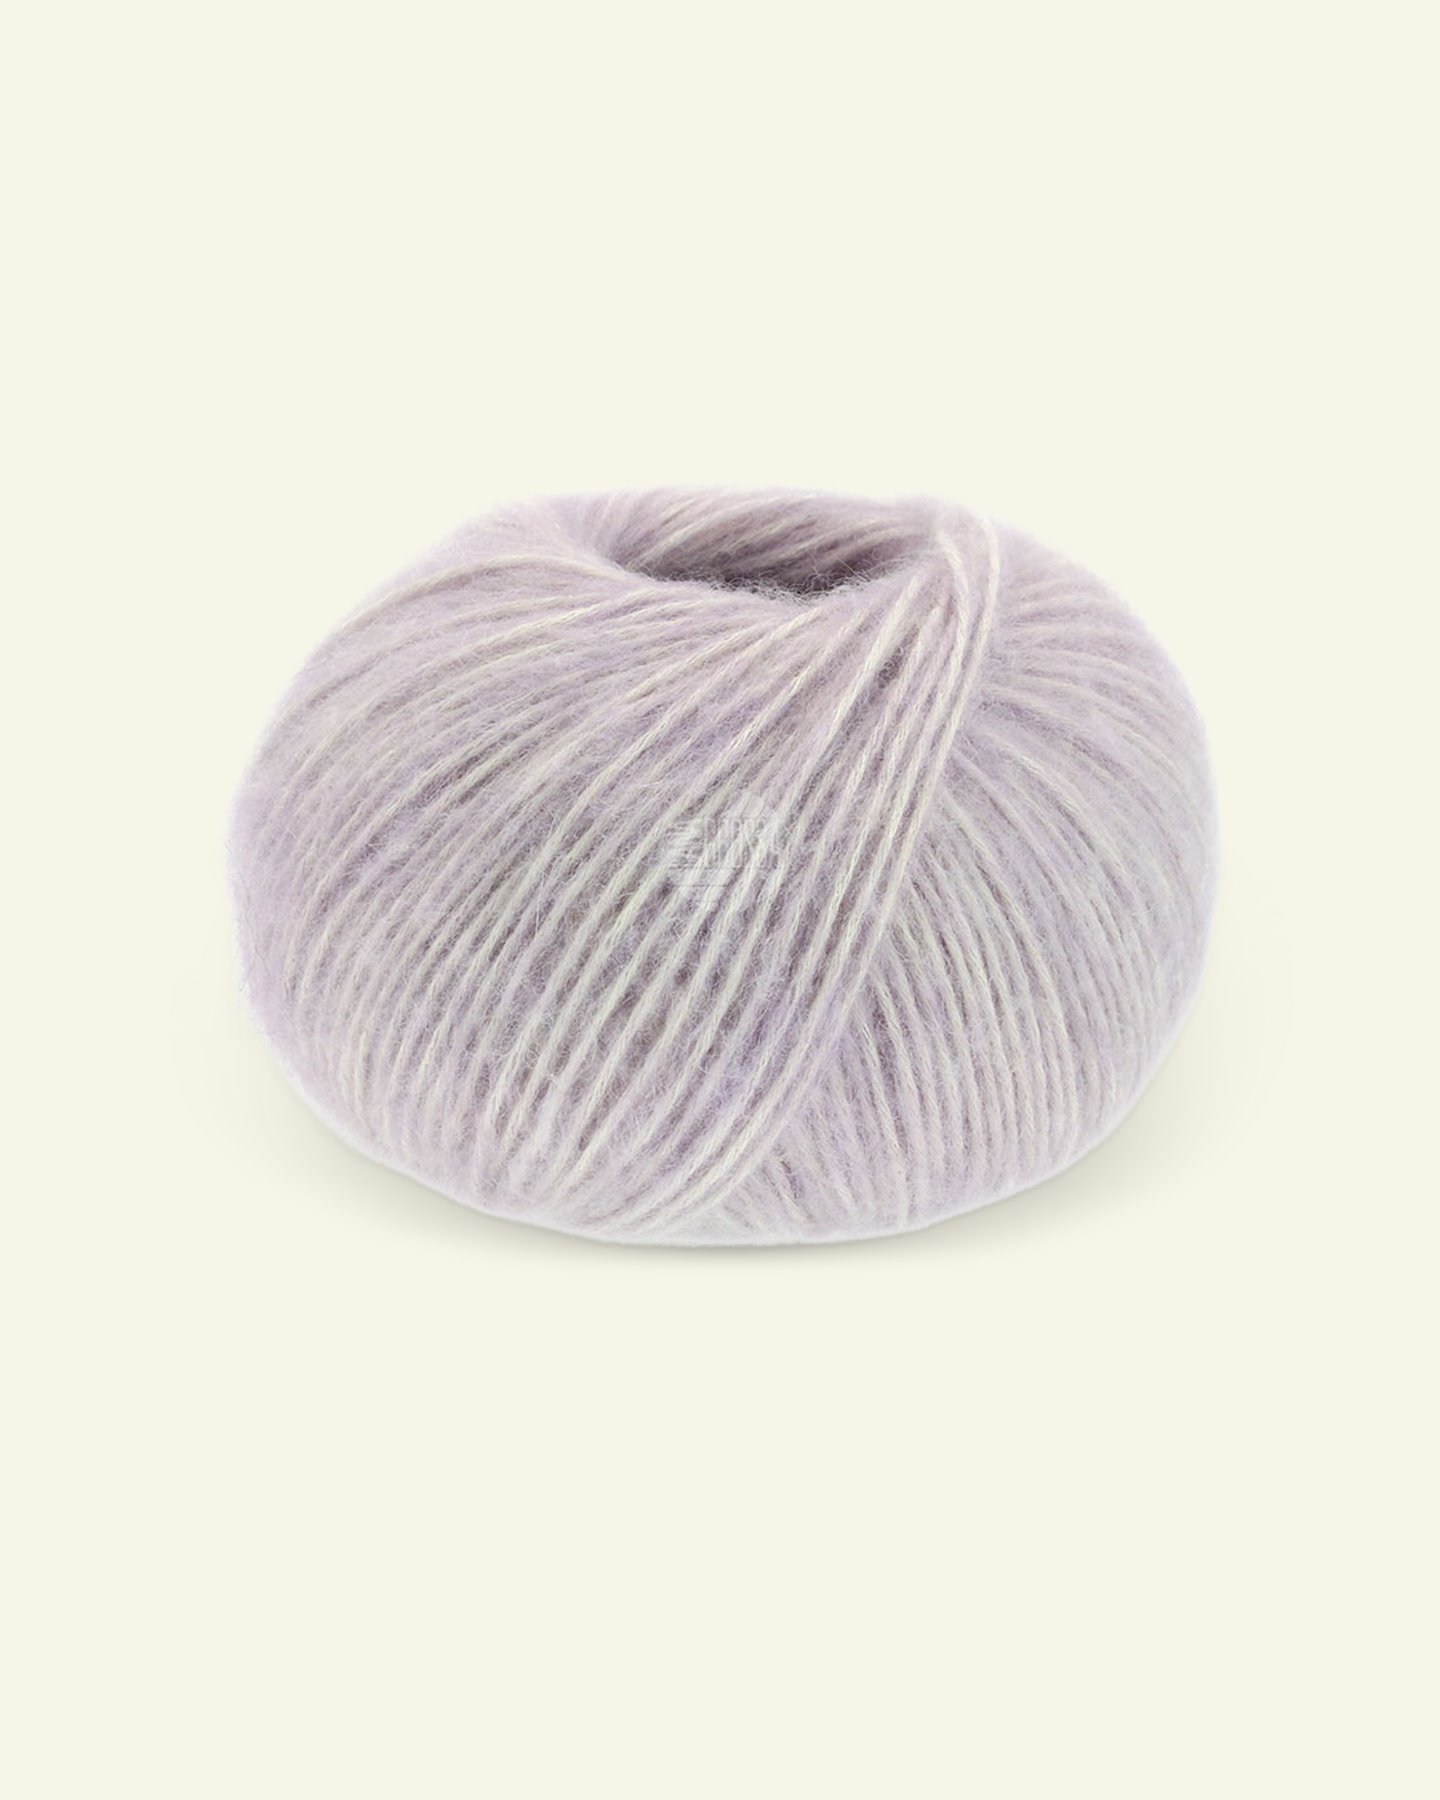 Lana Grossa, bomull/alpackagarn "Natural Alpaca Pelo", violett mel. 90001008_pack